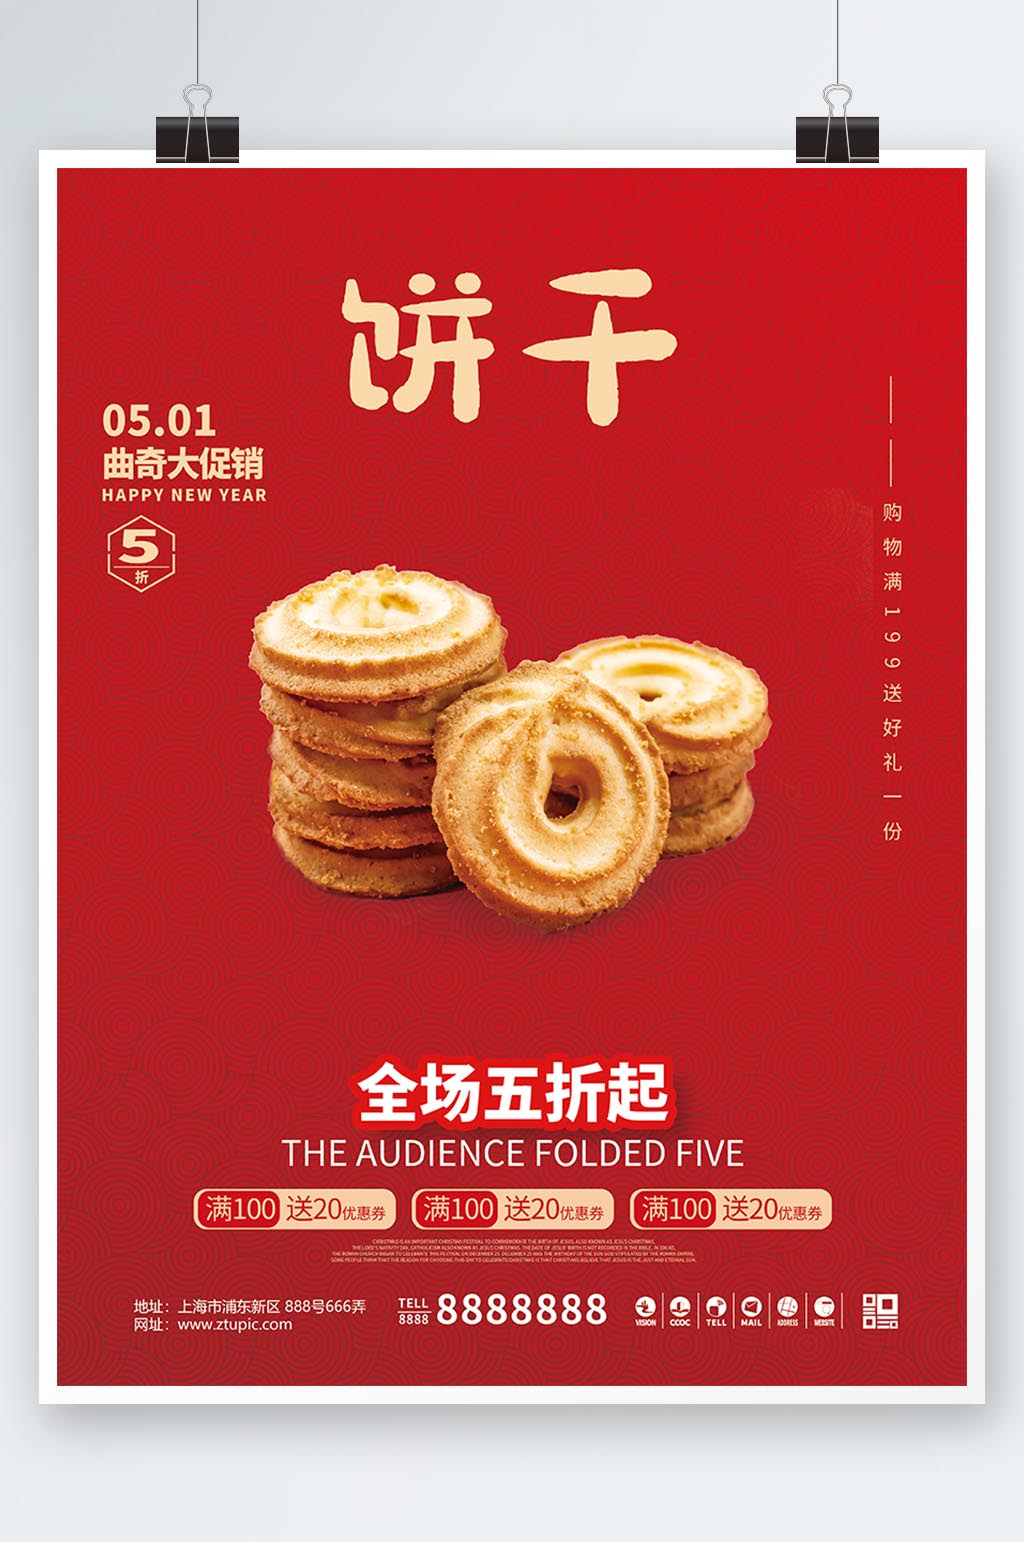 众图网独家提供红色系列曲奇饼干销售海报素材免费下载,本作品是由小